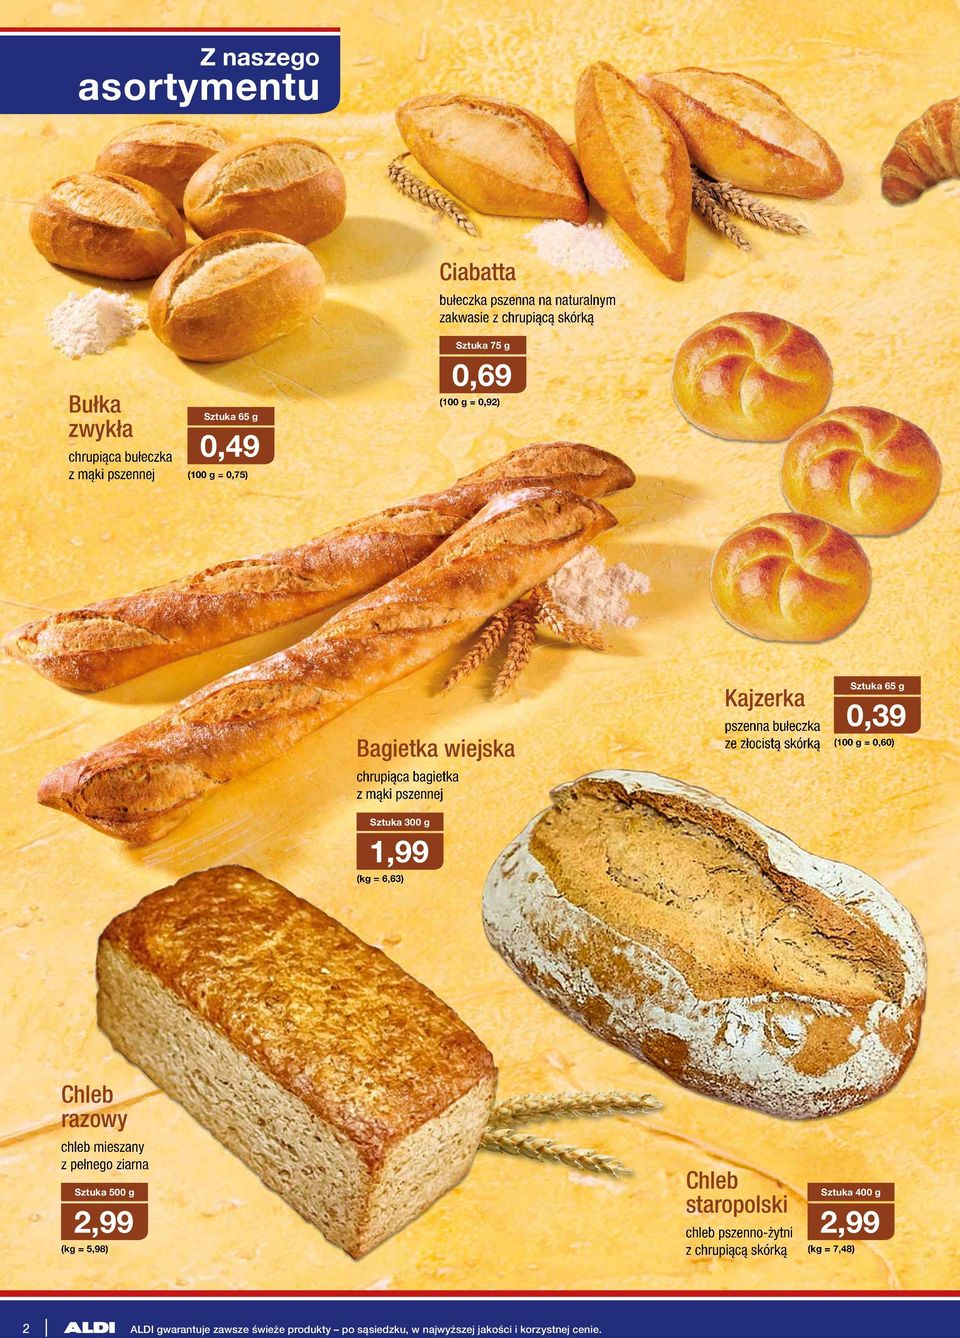 bułeczka ze złocistą skórką 65 g 0,39 (100 g = 0,60) Chleb razowy chleb mieszany z pełnego ziarna 500 g 2,99 (kg = 5,98) Chleb staropolski